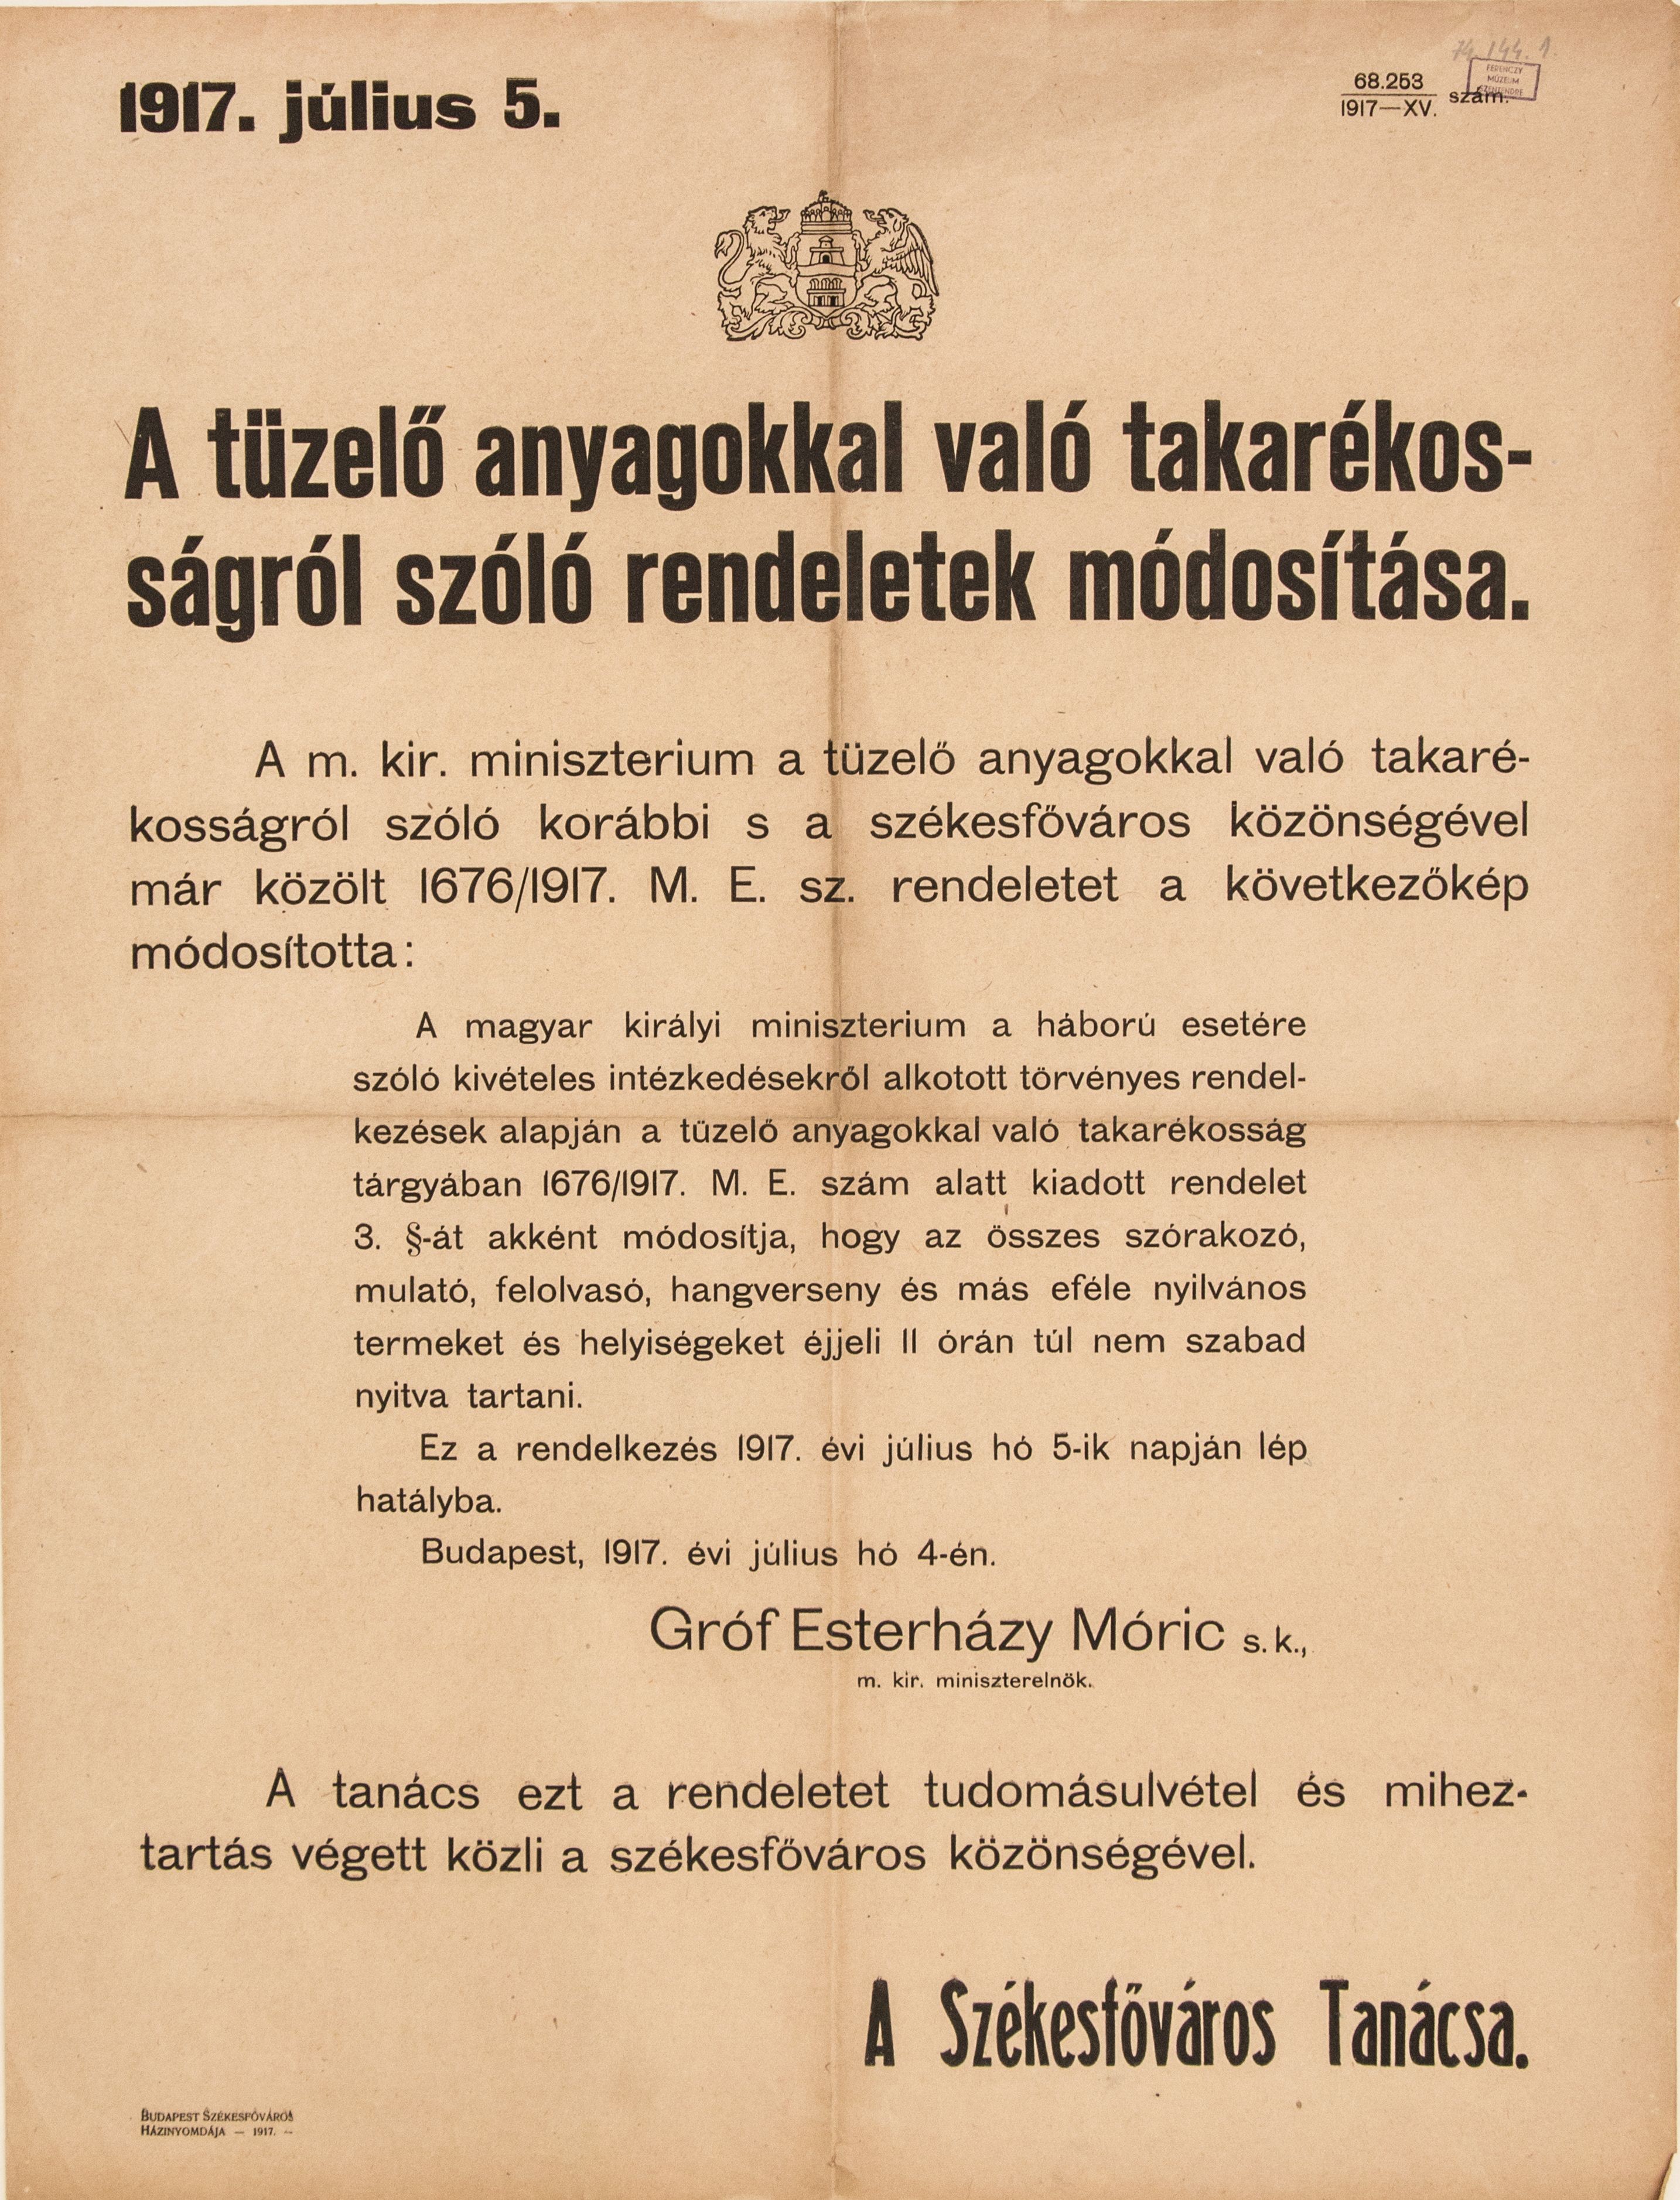 A tüzelőanyagokkal való takarékosságról szóló rendeletek módosítása, 1917.07.05. (Ferenczy Múzeumi Centrum CC BY-NC-SA)